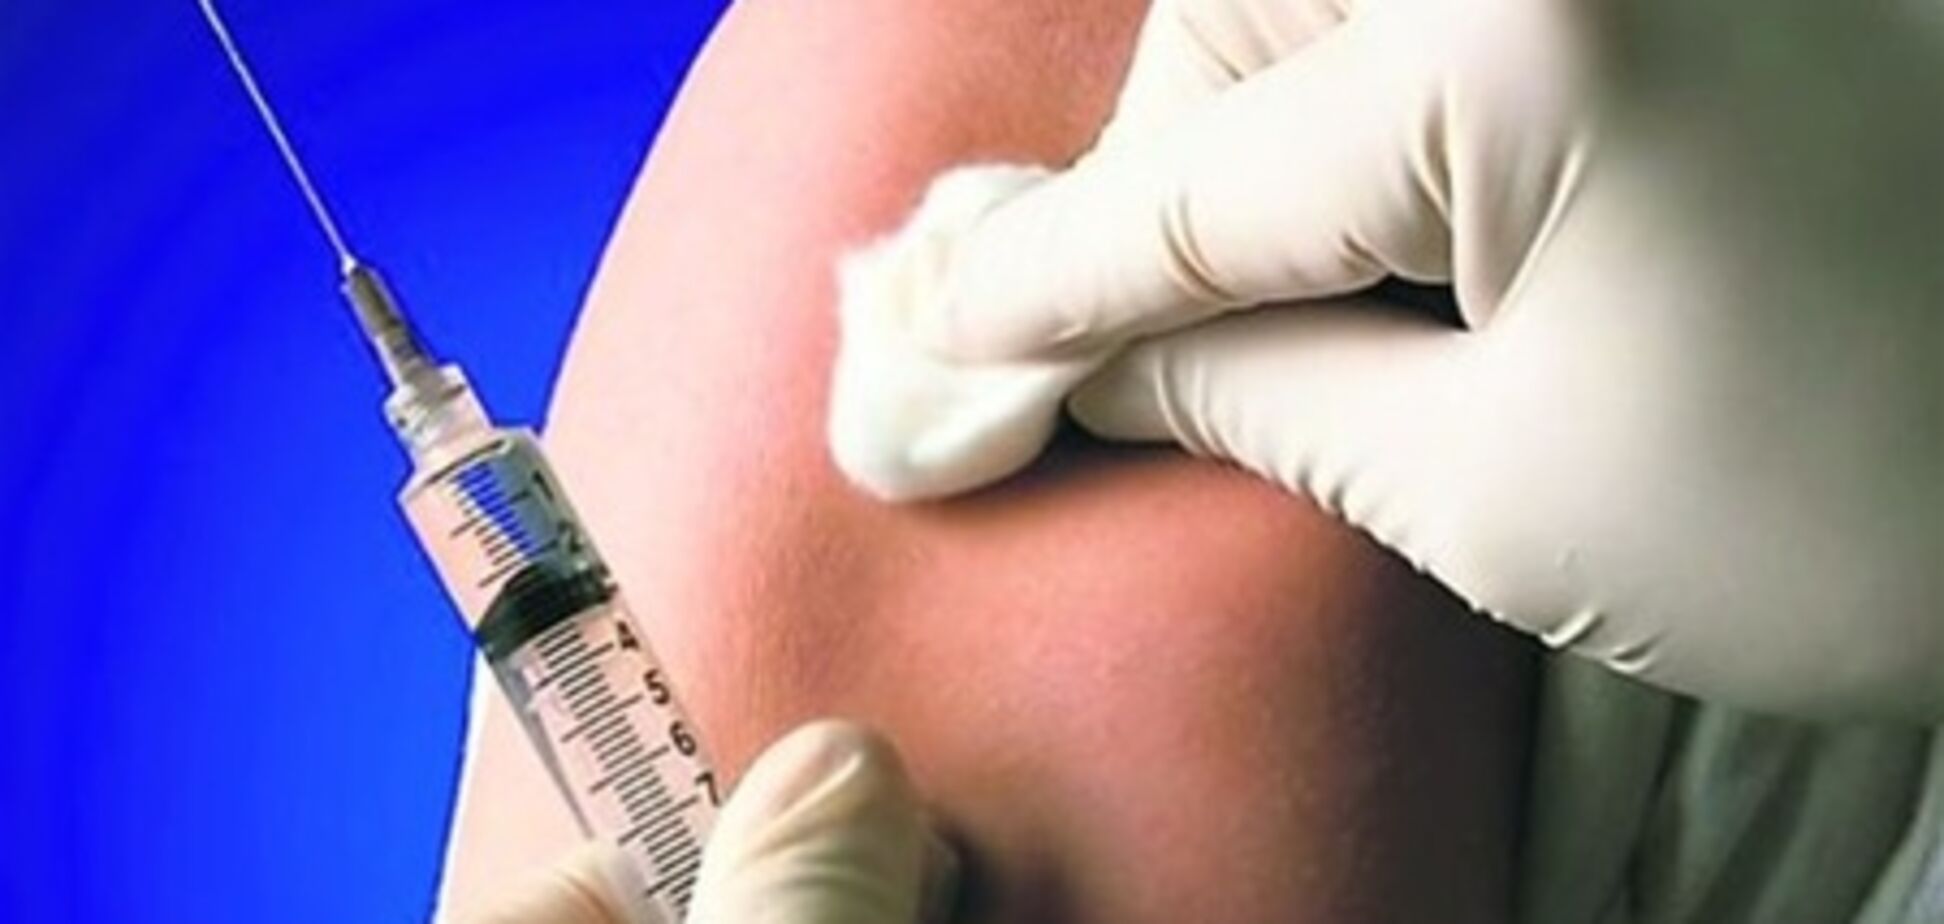 МОЗ: українці негативно ставляться до вакцинації